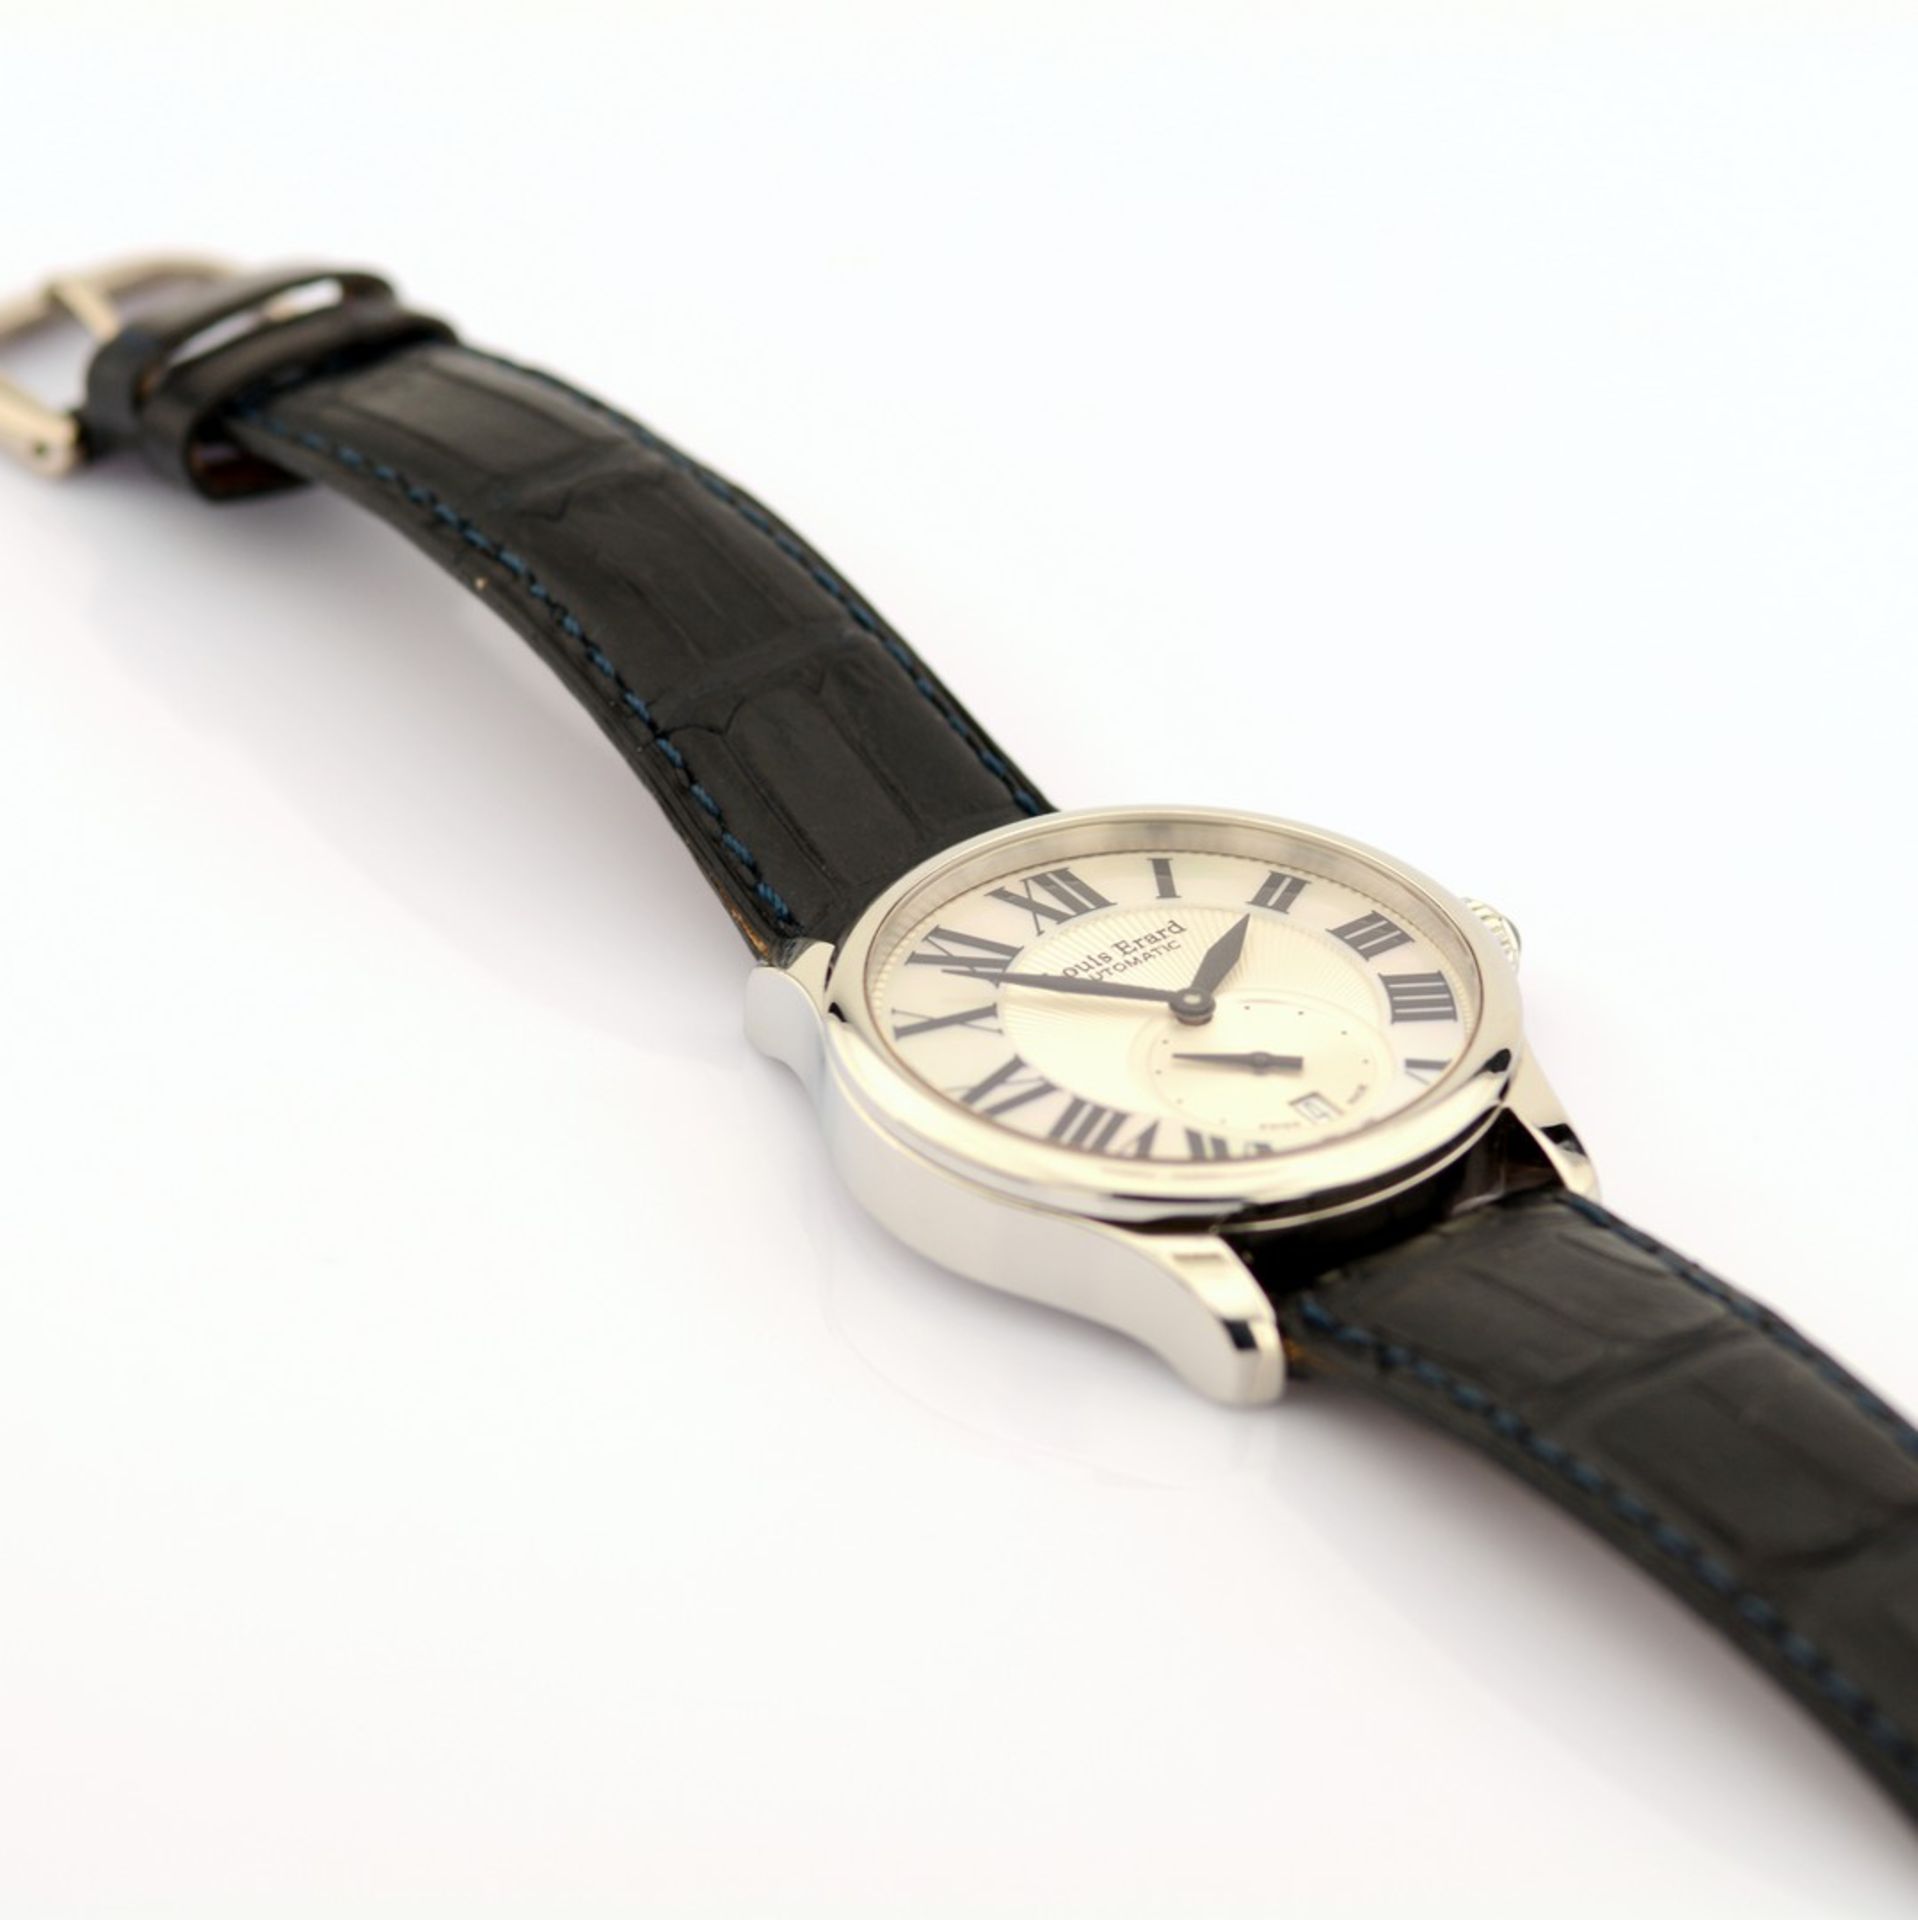 Louis Erard / L'Esprit du Temps Mother of Pearl Dial - Gentlemen's Steel Wristwatch - Image 5 of 7